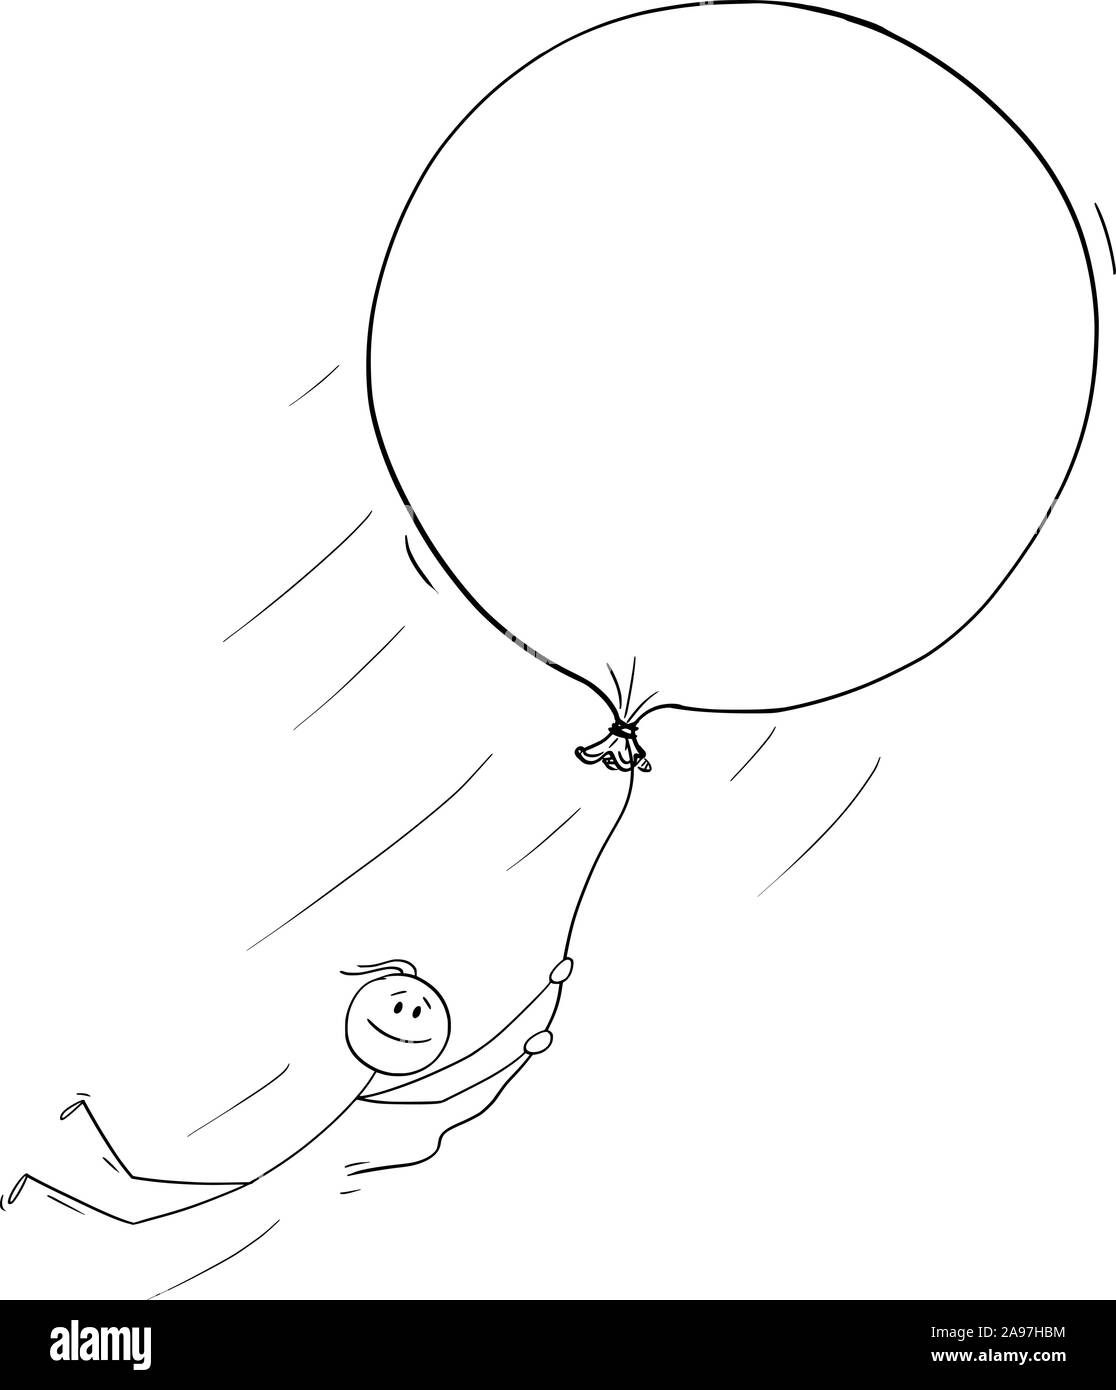 Vector cartoon stick figura disegno illustrazione concettuale dell'uomo o imprenditore tenendo il palloncino e il volo libero. Concetto di sogni,la creatività e la libertà. Illustrazione Vettoriale